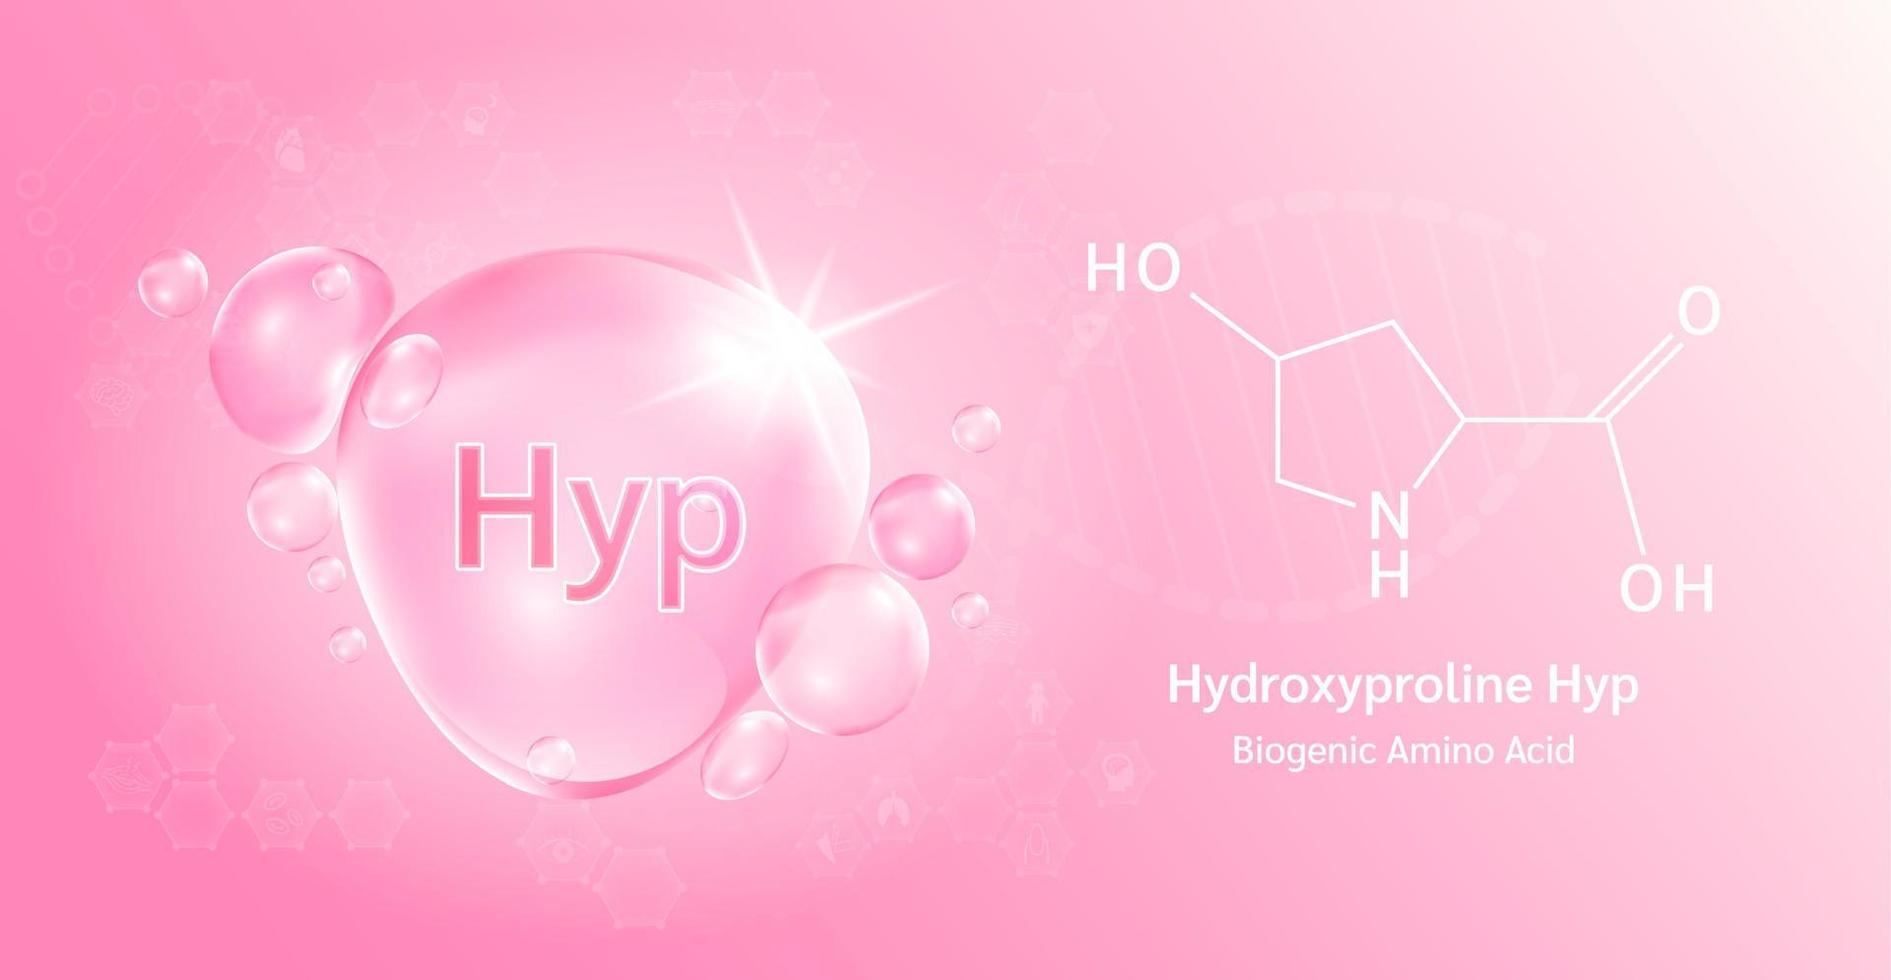 goccia d'acqua importante aminoacido idrossiprolina hyp e formula chimica strutturale. idrossiprolina su fondo rosa. concetti medici e scientifici. illustrazione vettoriale 3d.